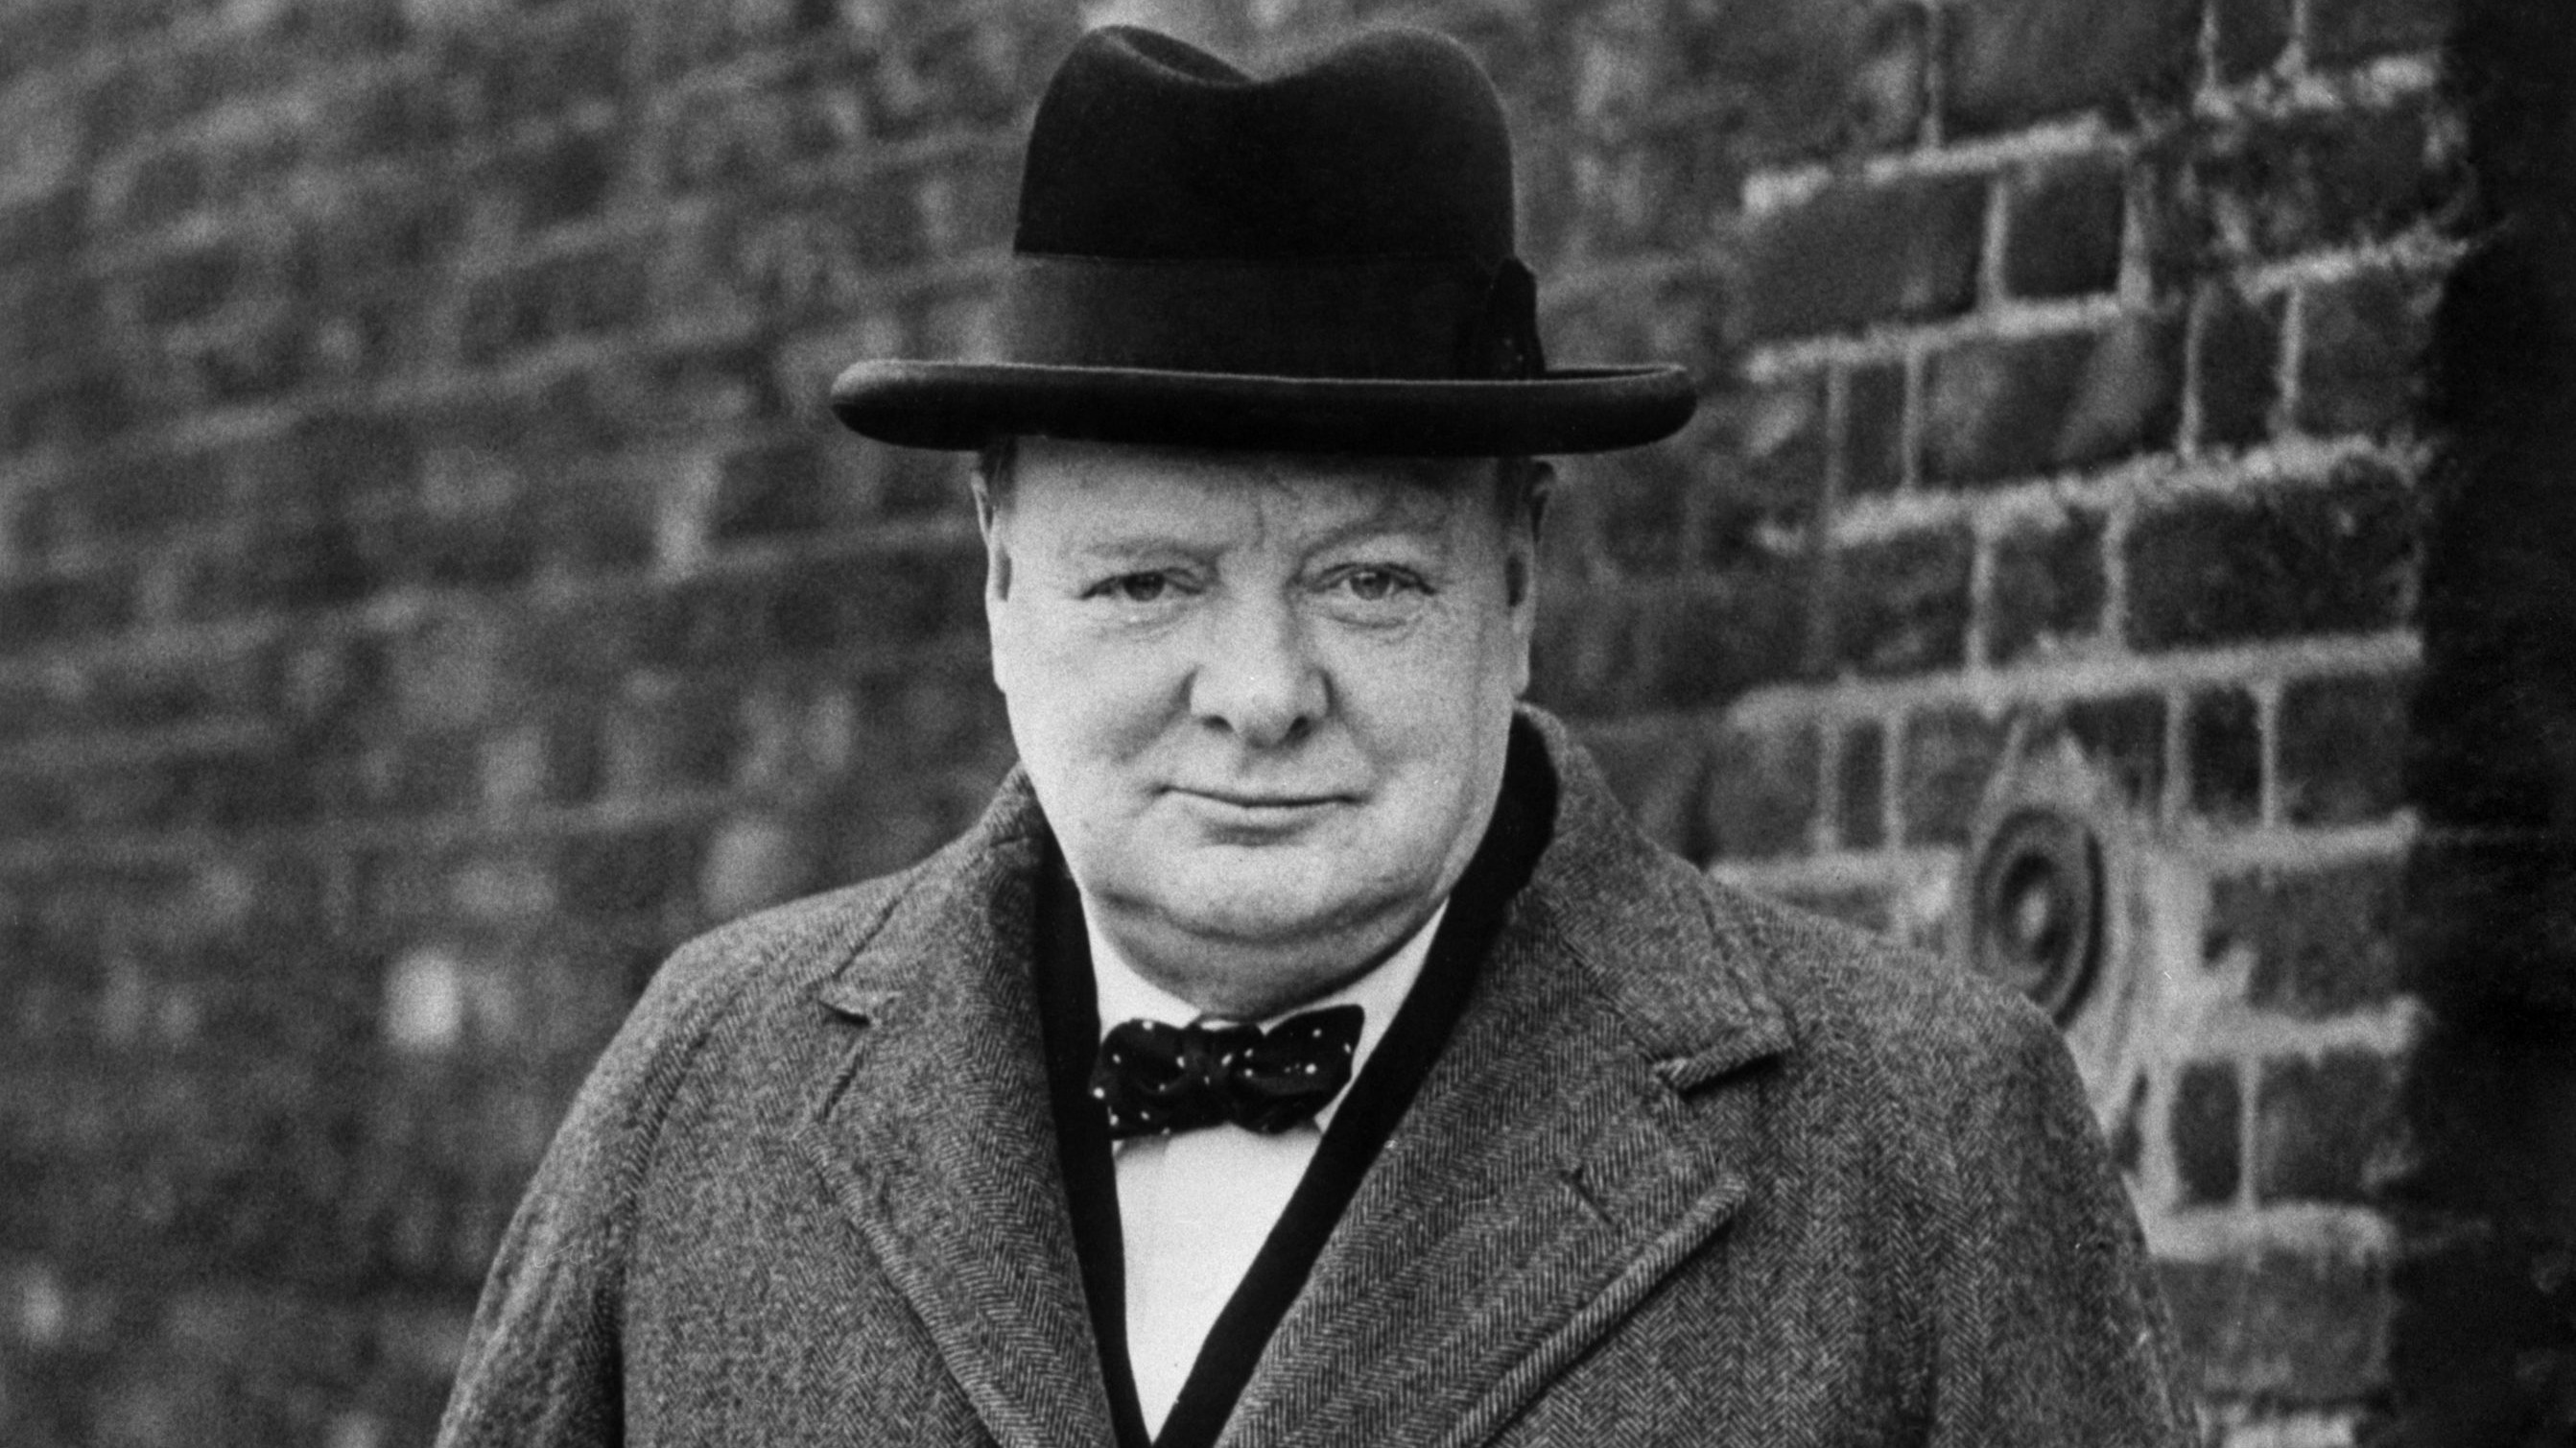 Imagen histórica de Winston Churchill, líder del Reino Unido